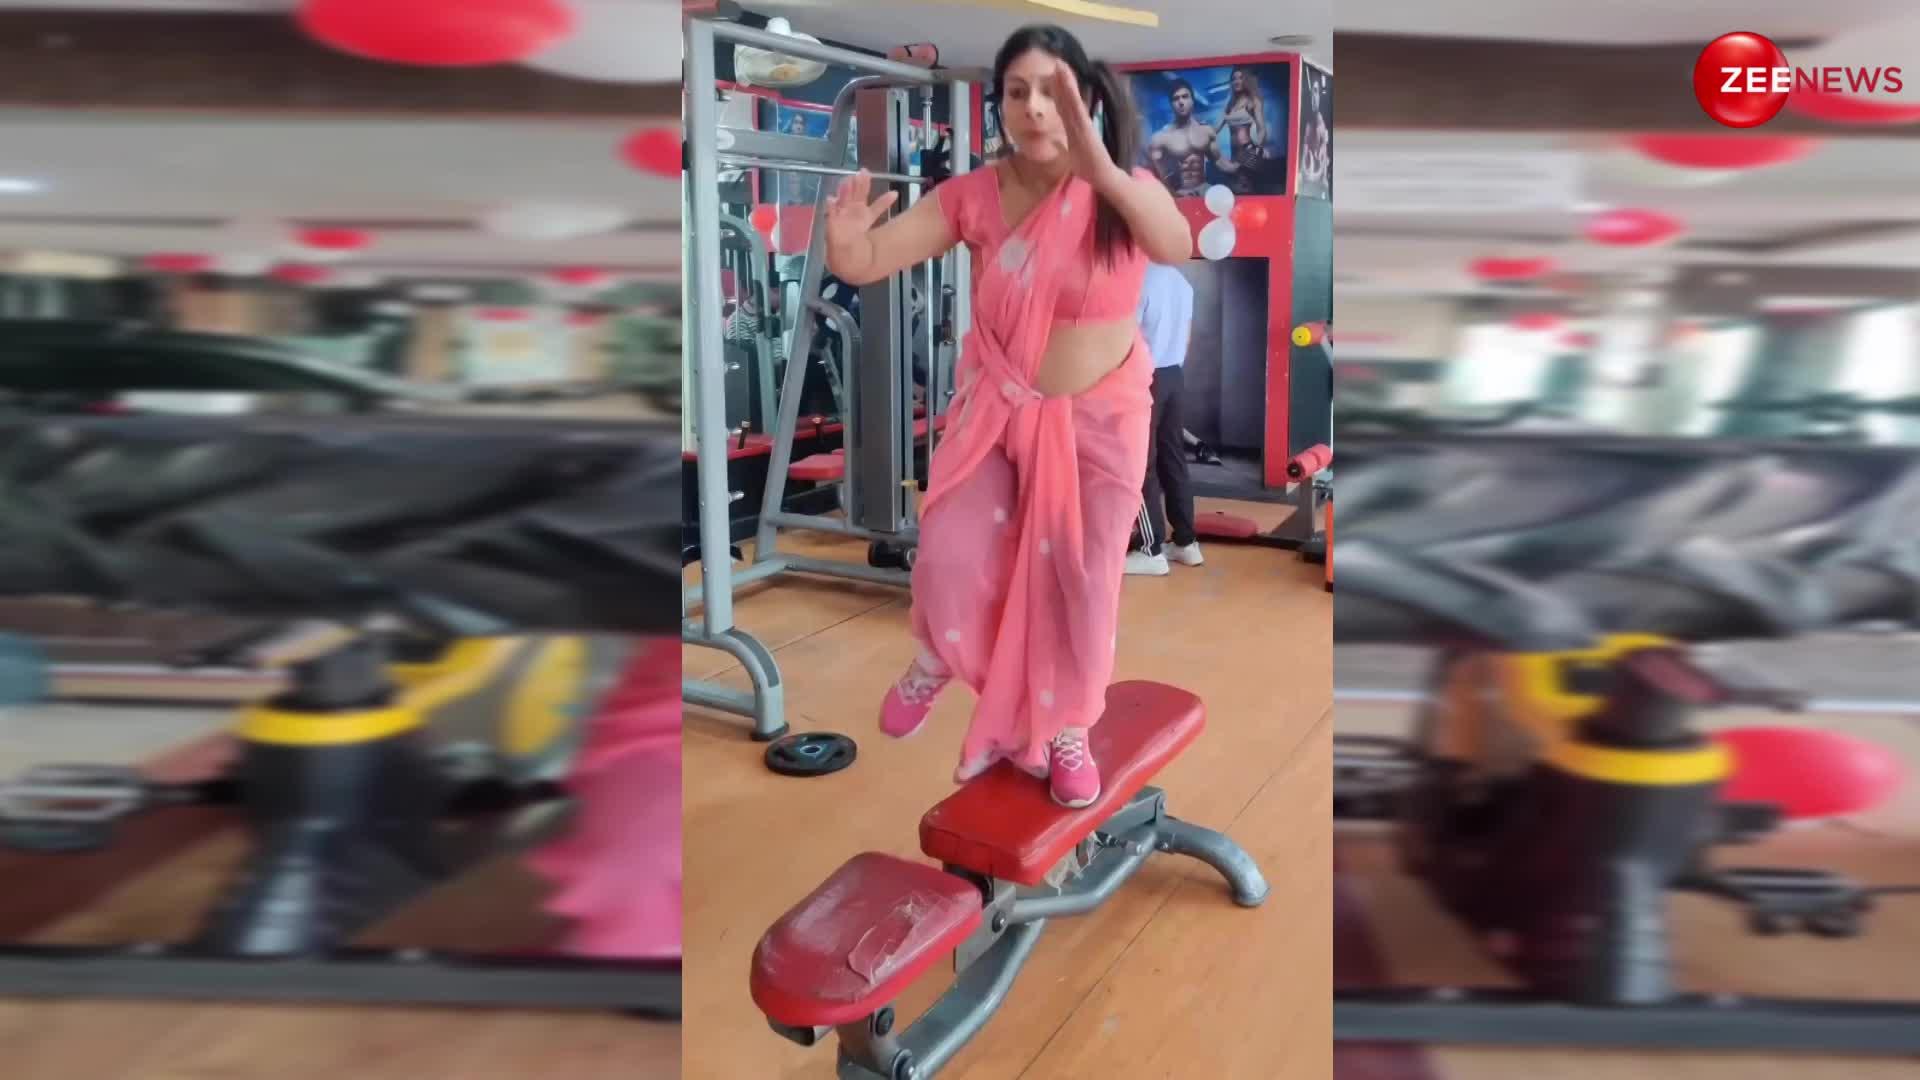 महिला ने जिम में साड़ी पहनकर किया वर्कआउट लोगों के उड़ गए होश, वायरल हो रही हैं वीडियो